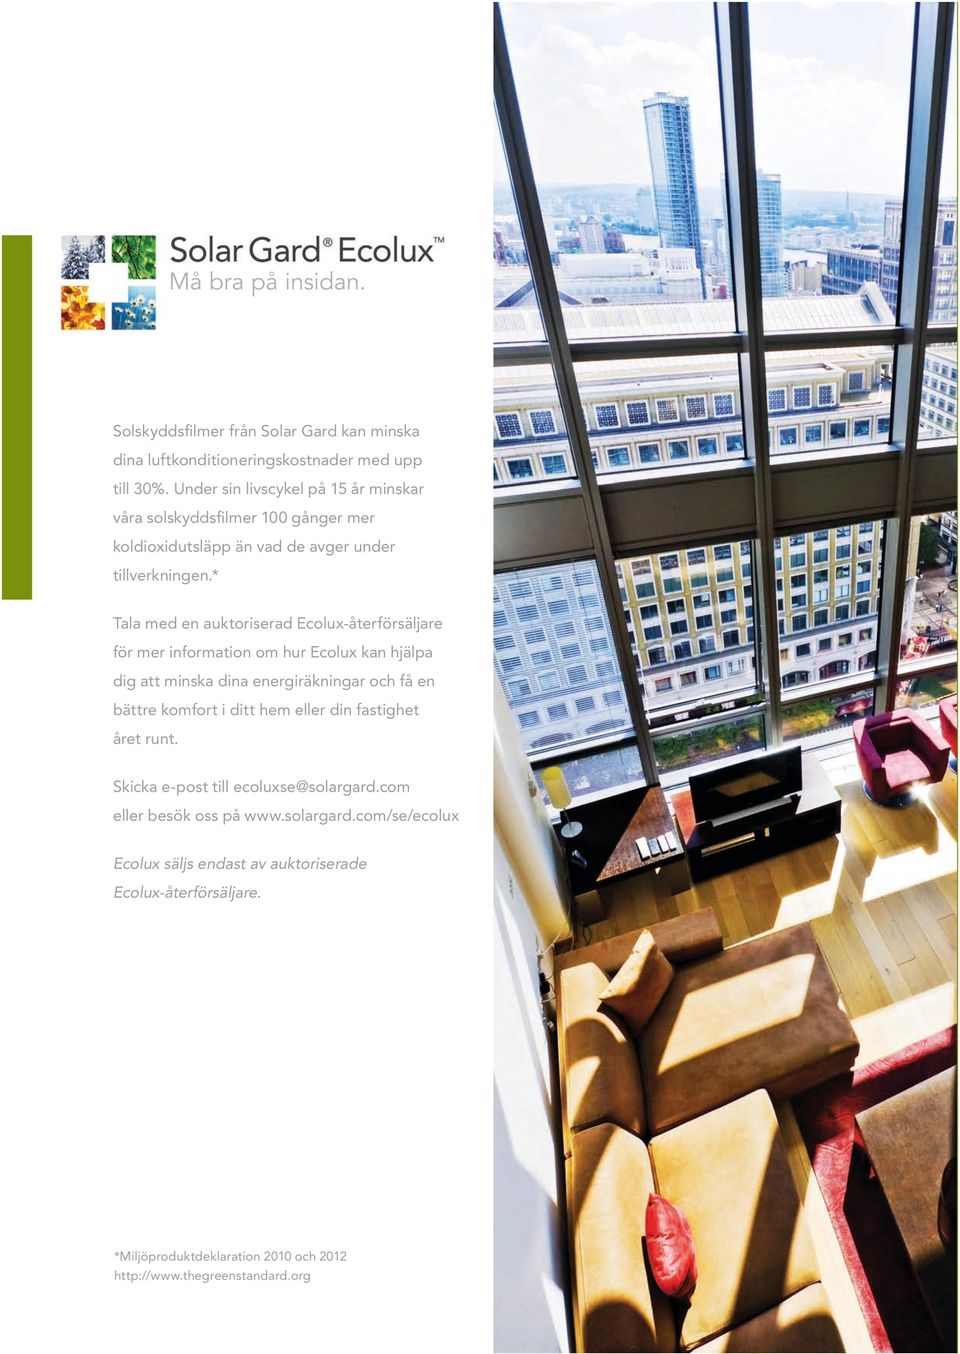 * Tala med en auktoriserad Ecolux-återförsäljare för mer information om hur Ecolux kan hjälpa dig att minska dina energiräkningar och få en bättre komfort i ditt